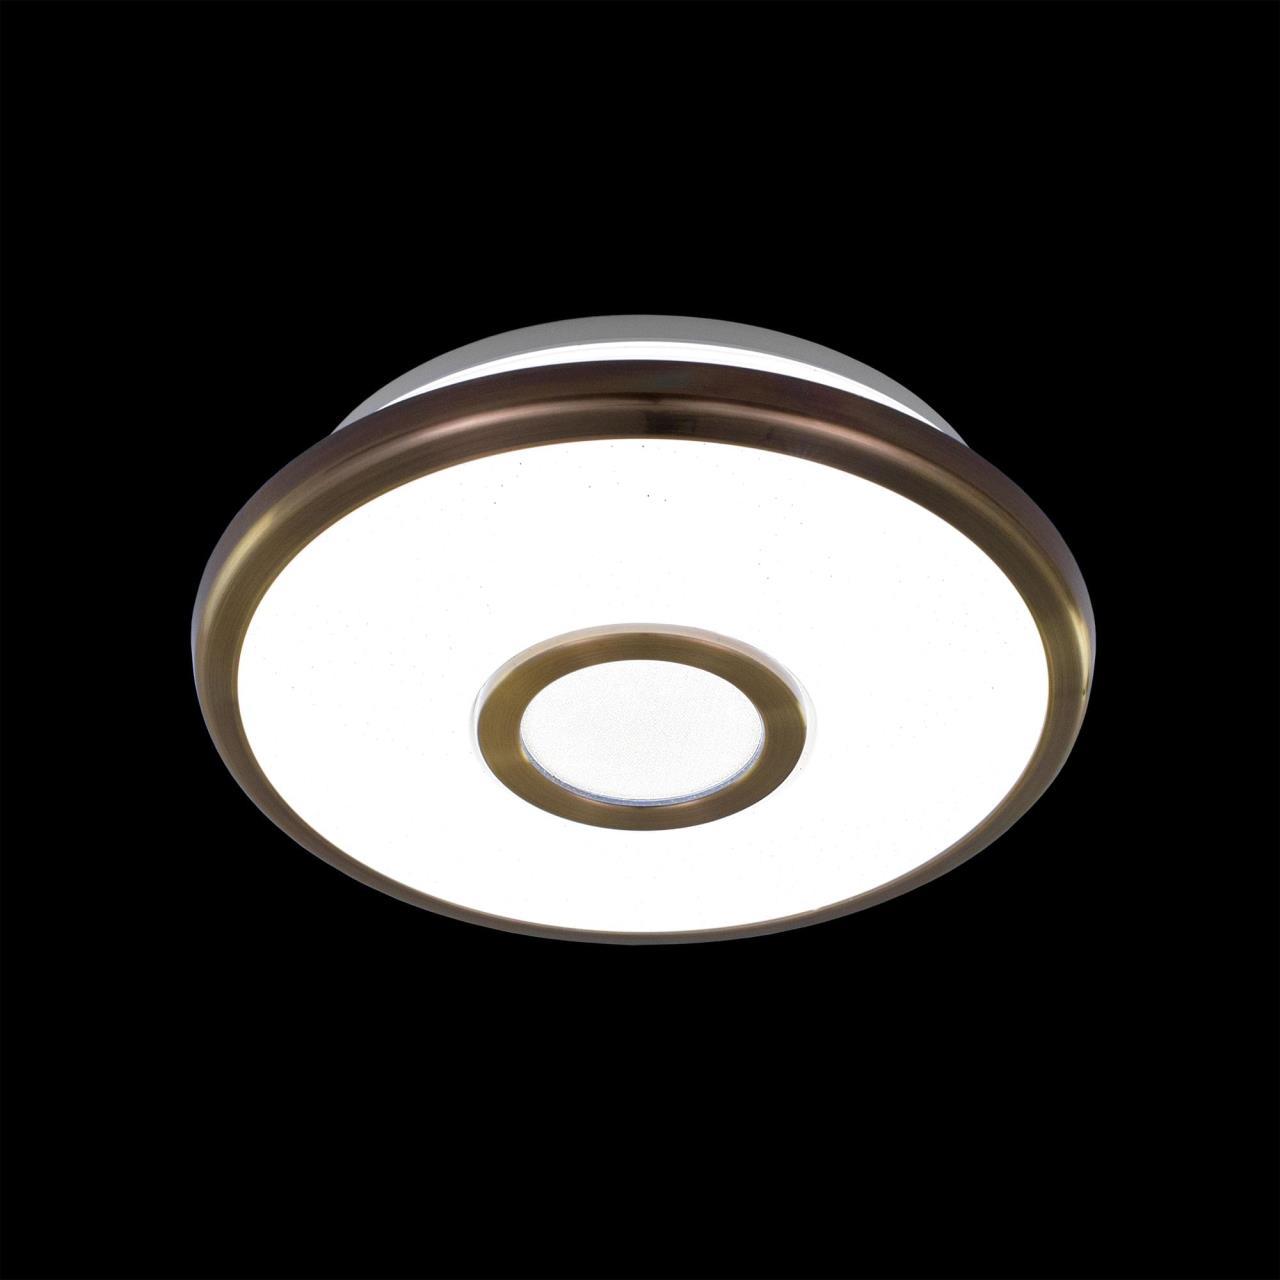 Потолочный светодиодный светильник Citilux Старлайт CL70313, IP44, LED 12W 3000K 800lm, белый, бронза, металл, металл с пластиком - фото 2